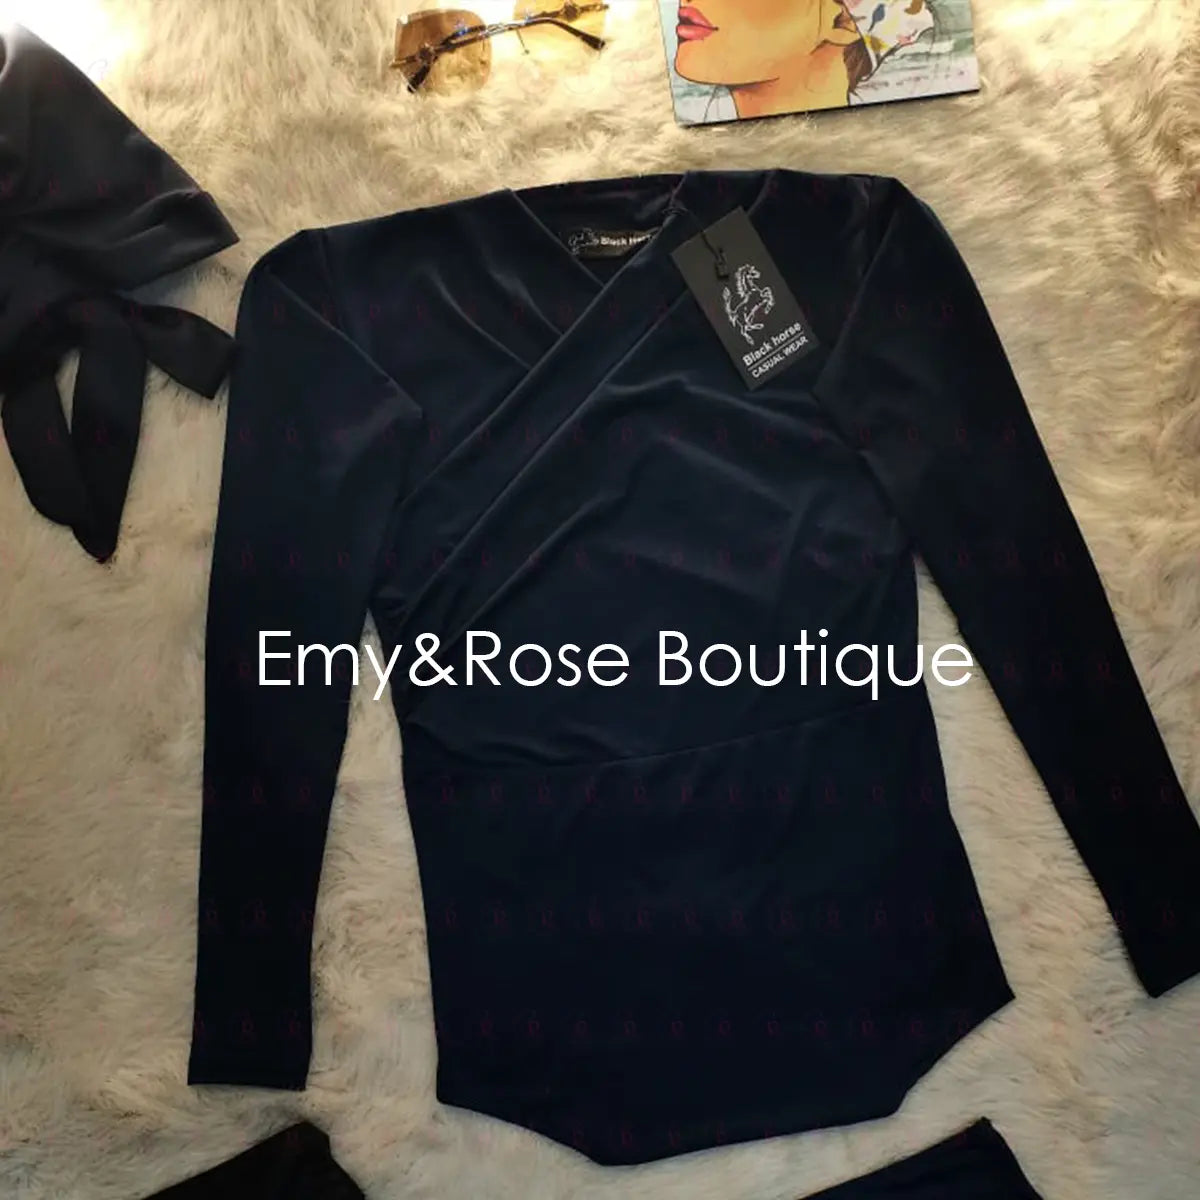 Croisette Swimsuit - EMY & ROSE Boutique 